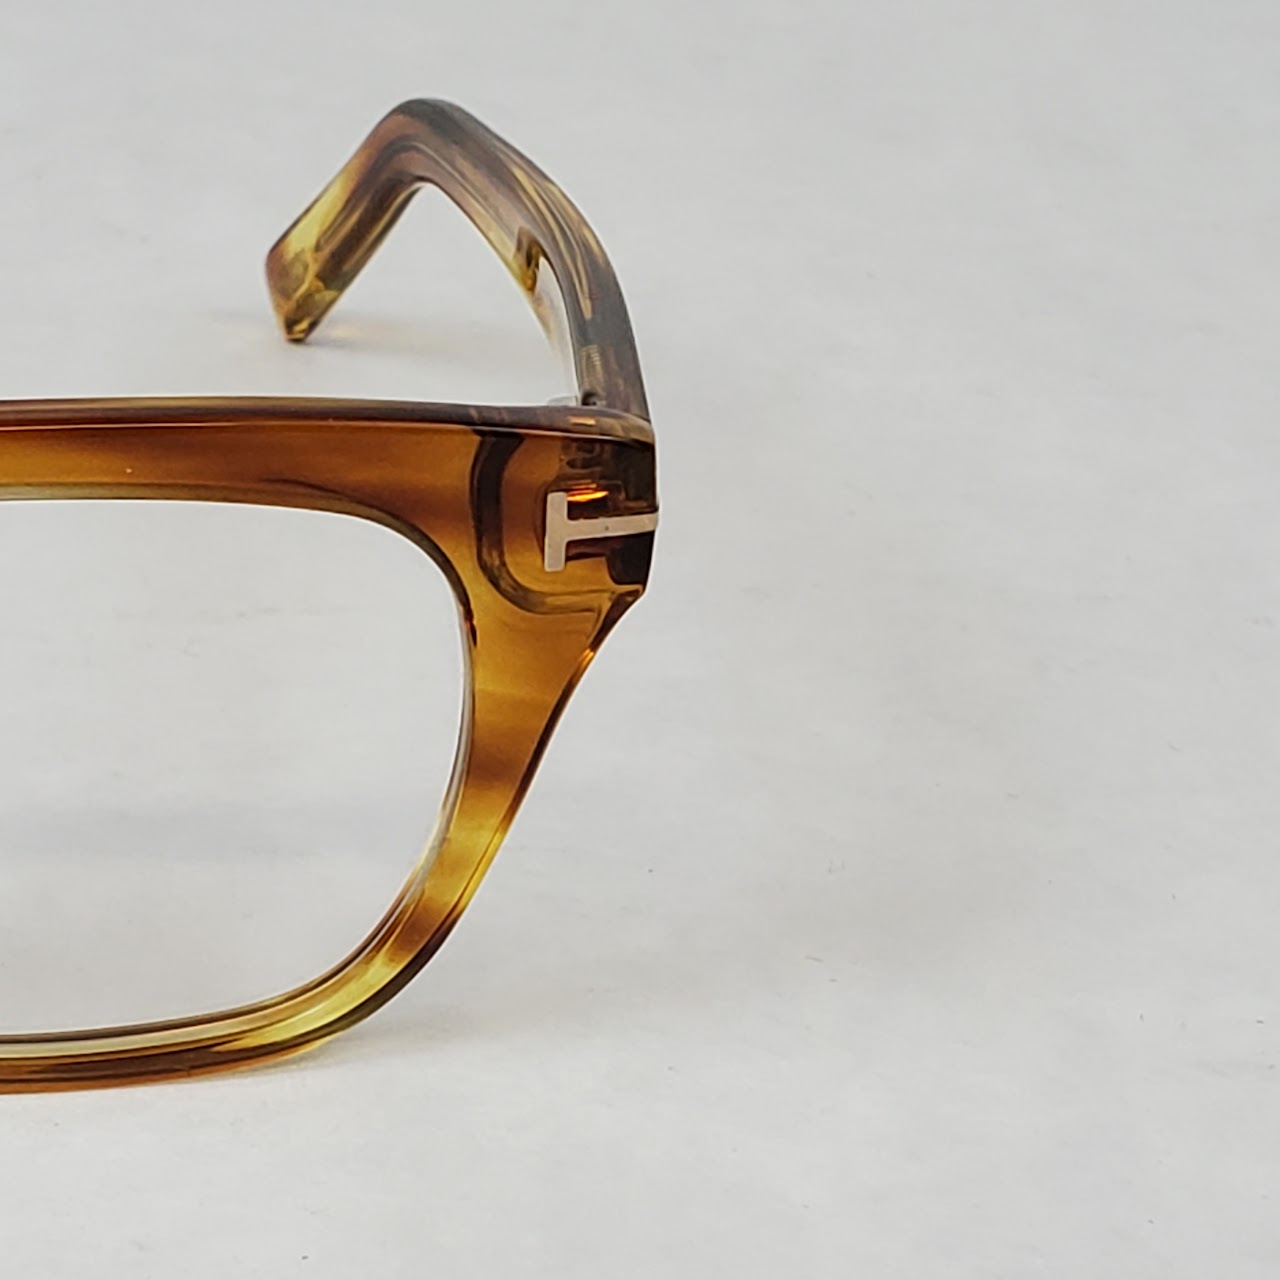 Tom Ford 'Tortoise' Eyeglasses